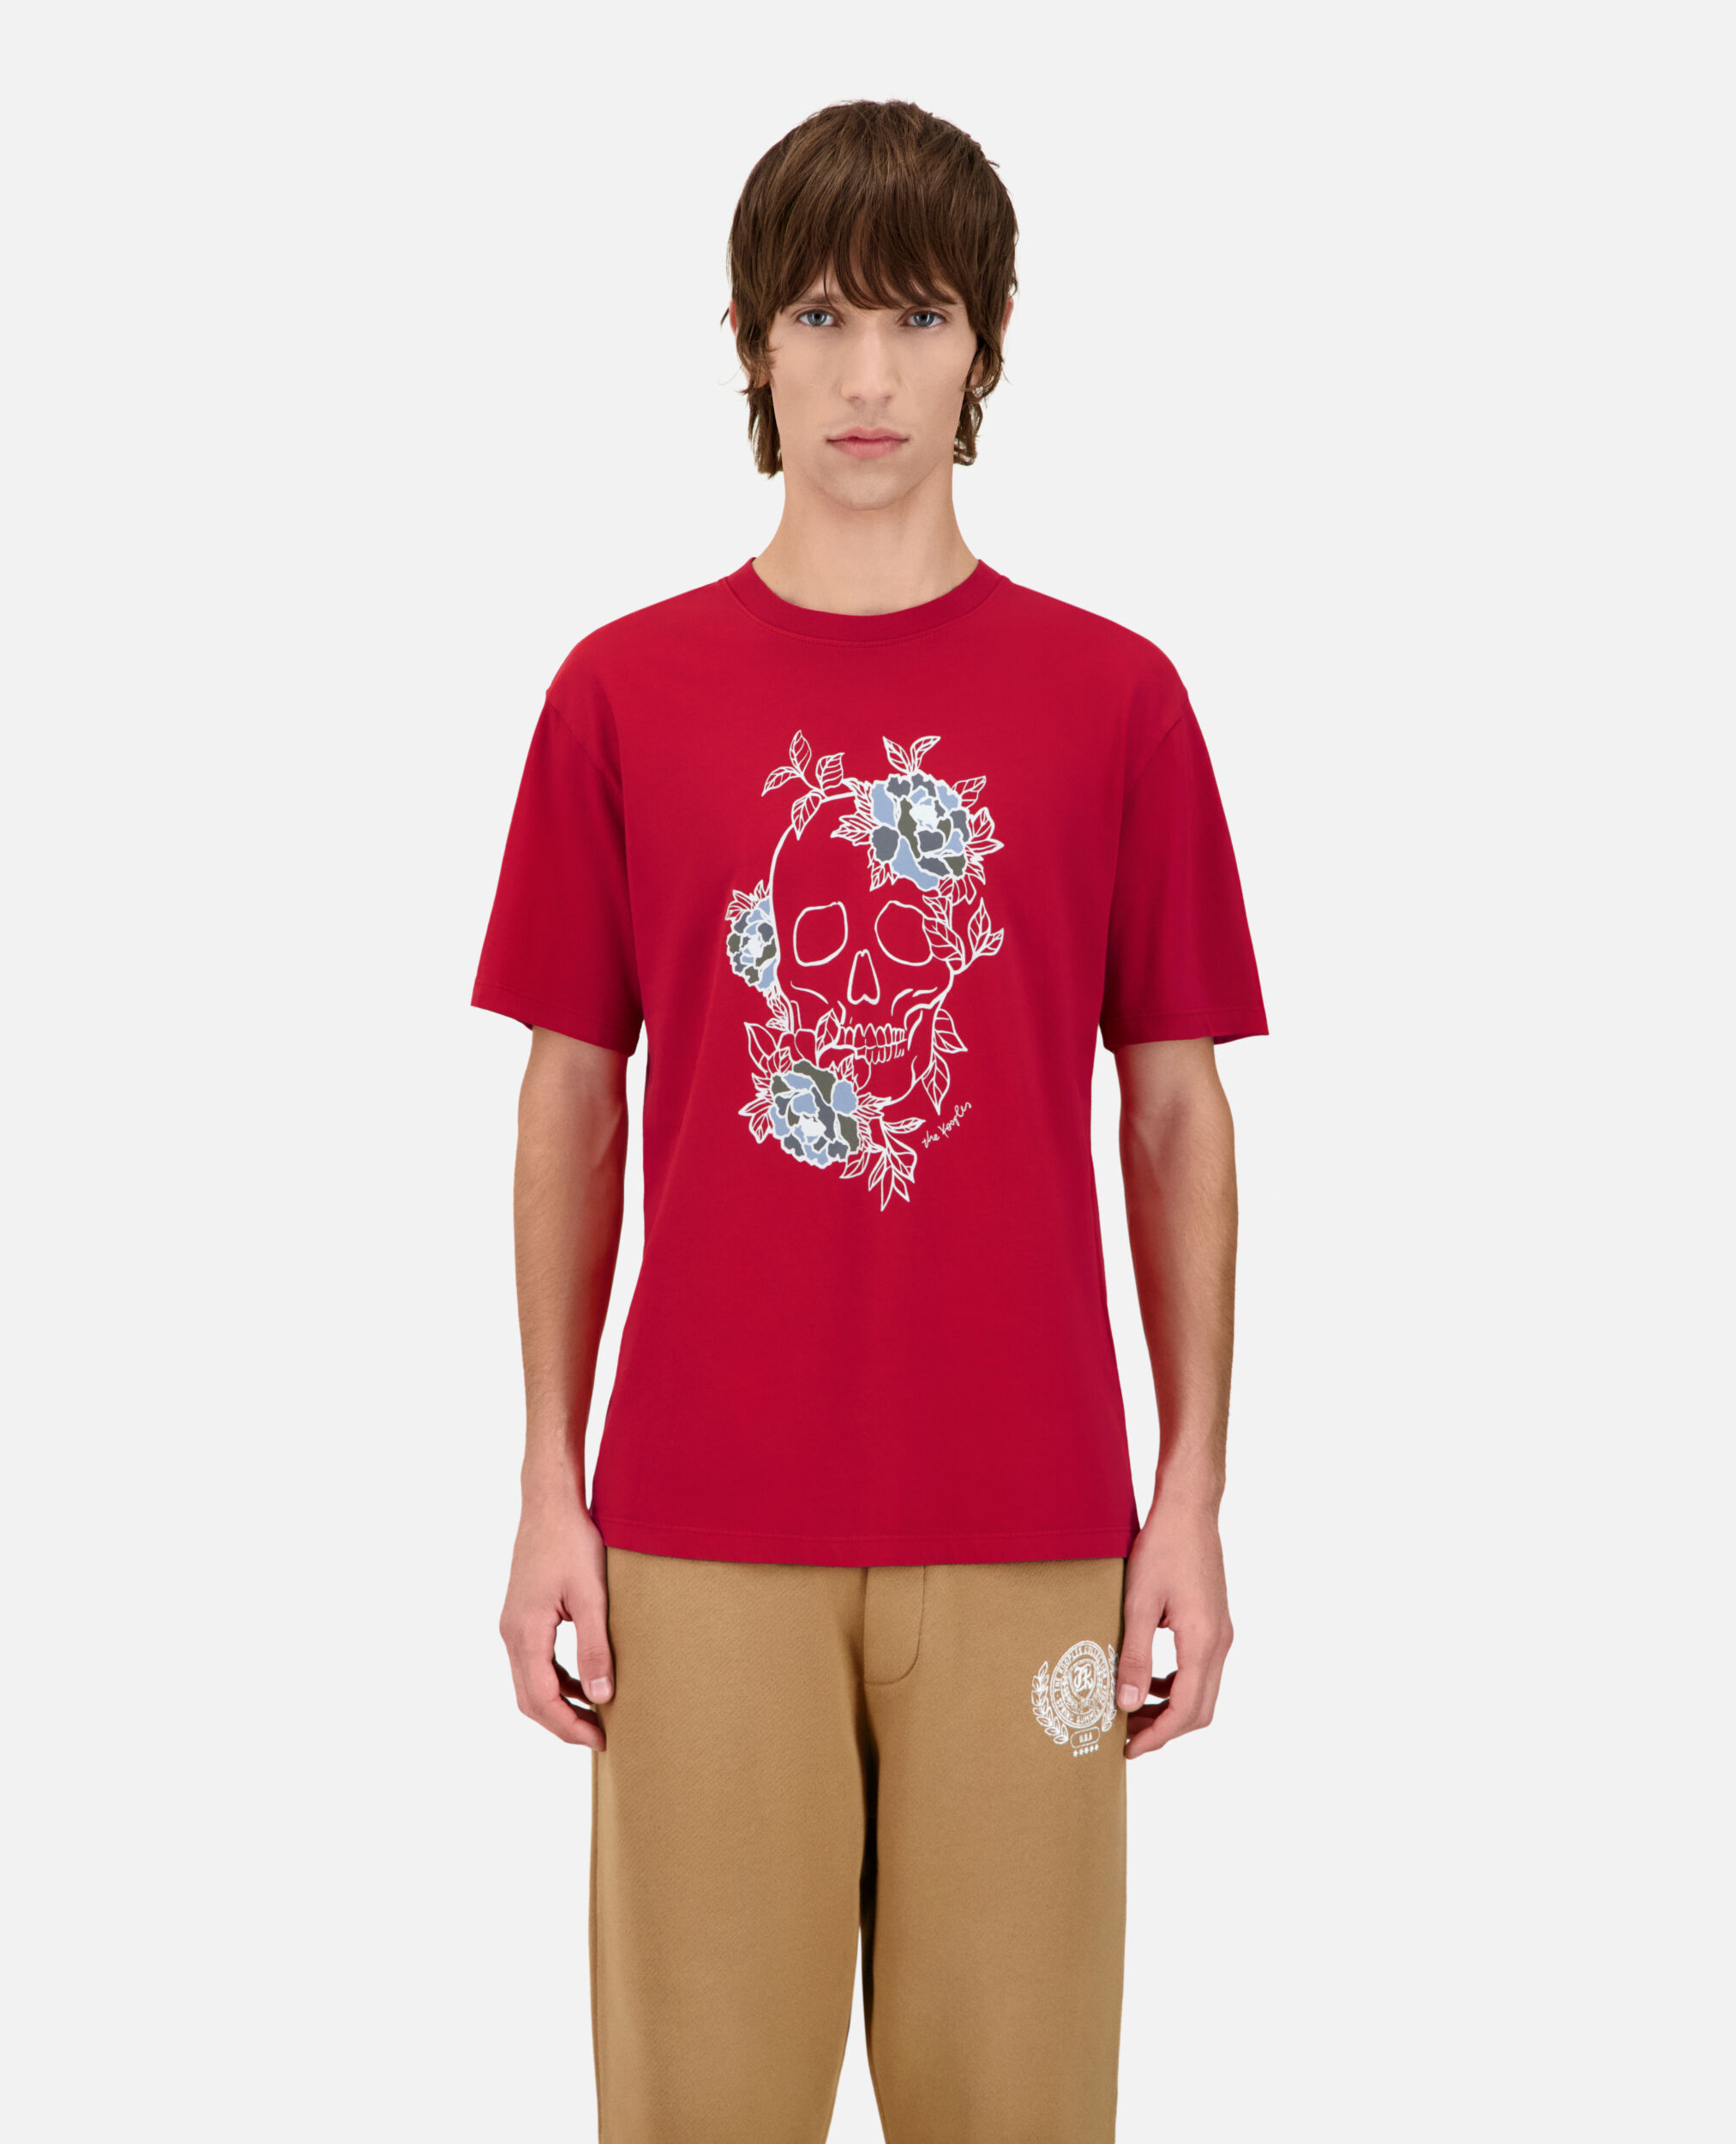 Camiseta hombre roja serigrafía Flower skull, CHERRY, hi-res image number null